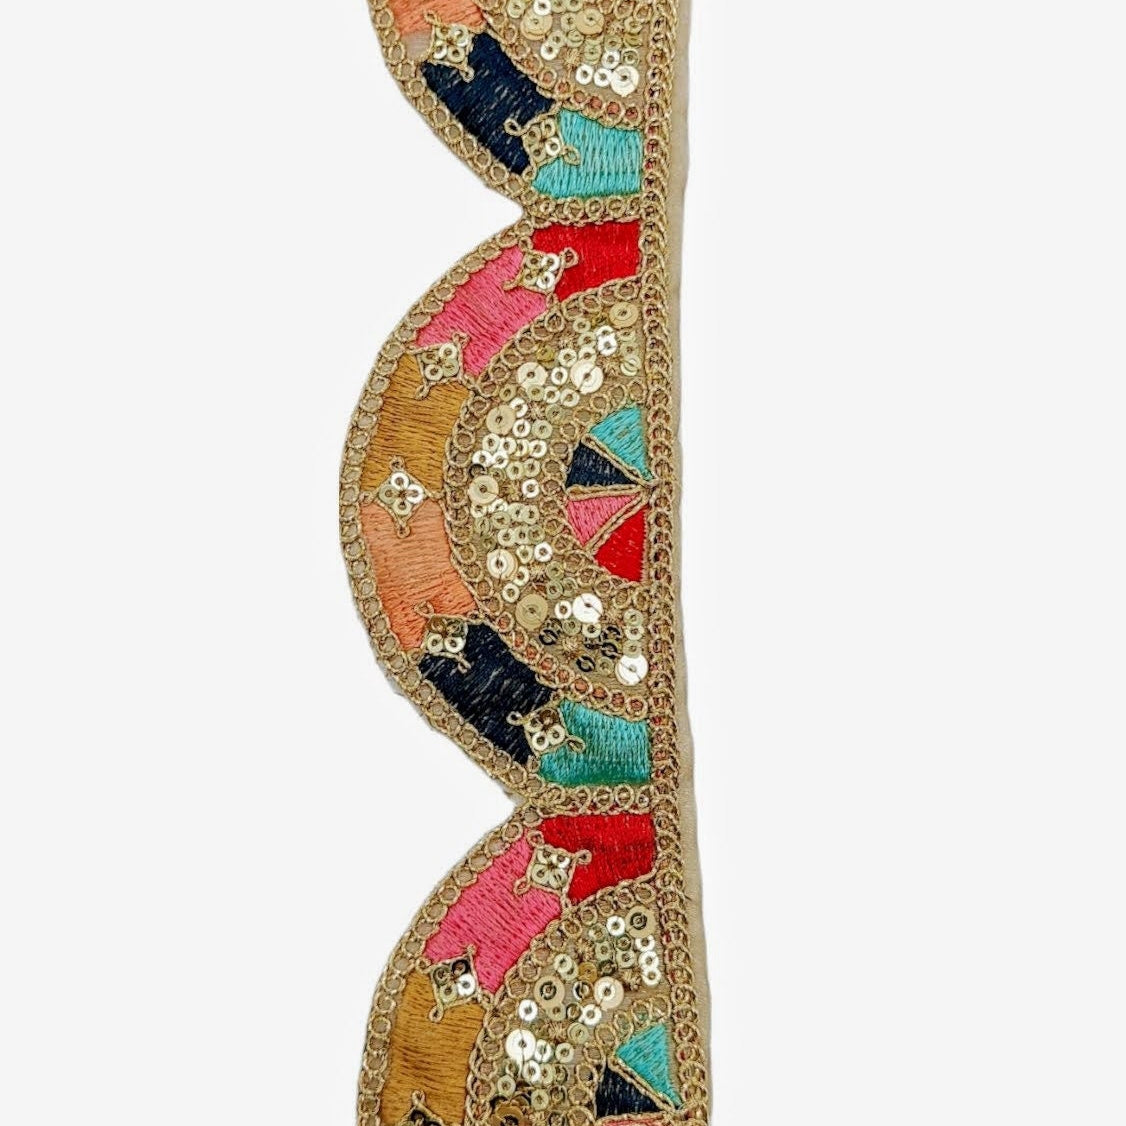 9 Yards Multicoloured Embroidered Trim, Decorative Trim, Indian Sari Border Sequin Trimming